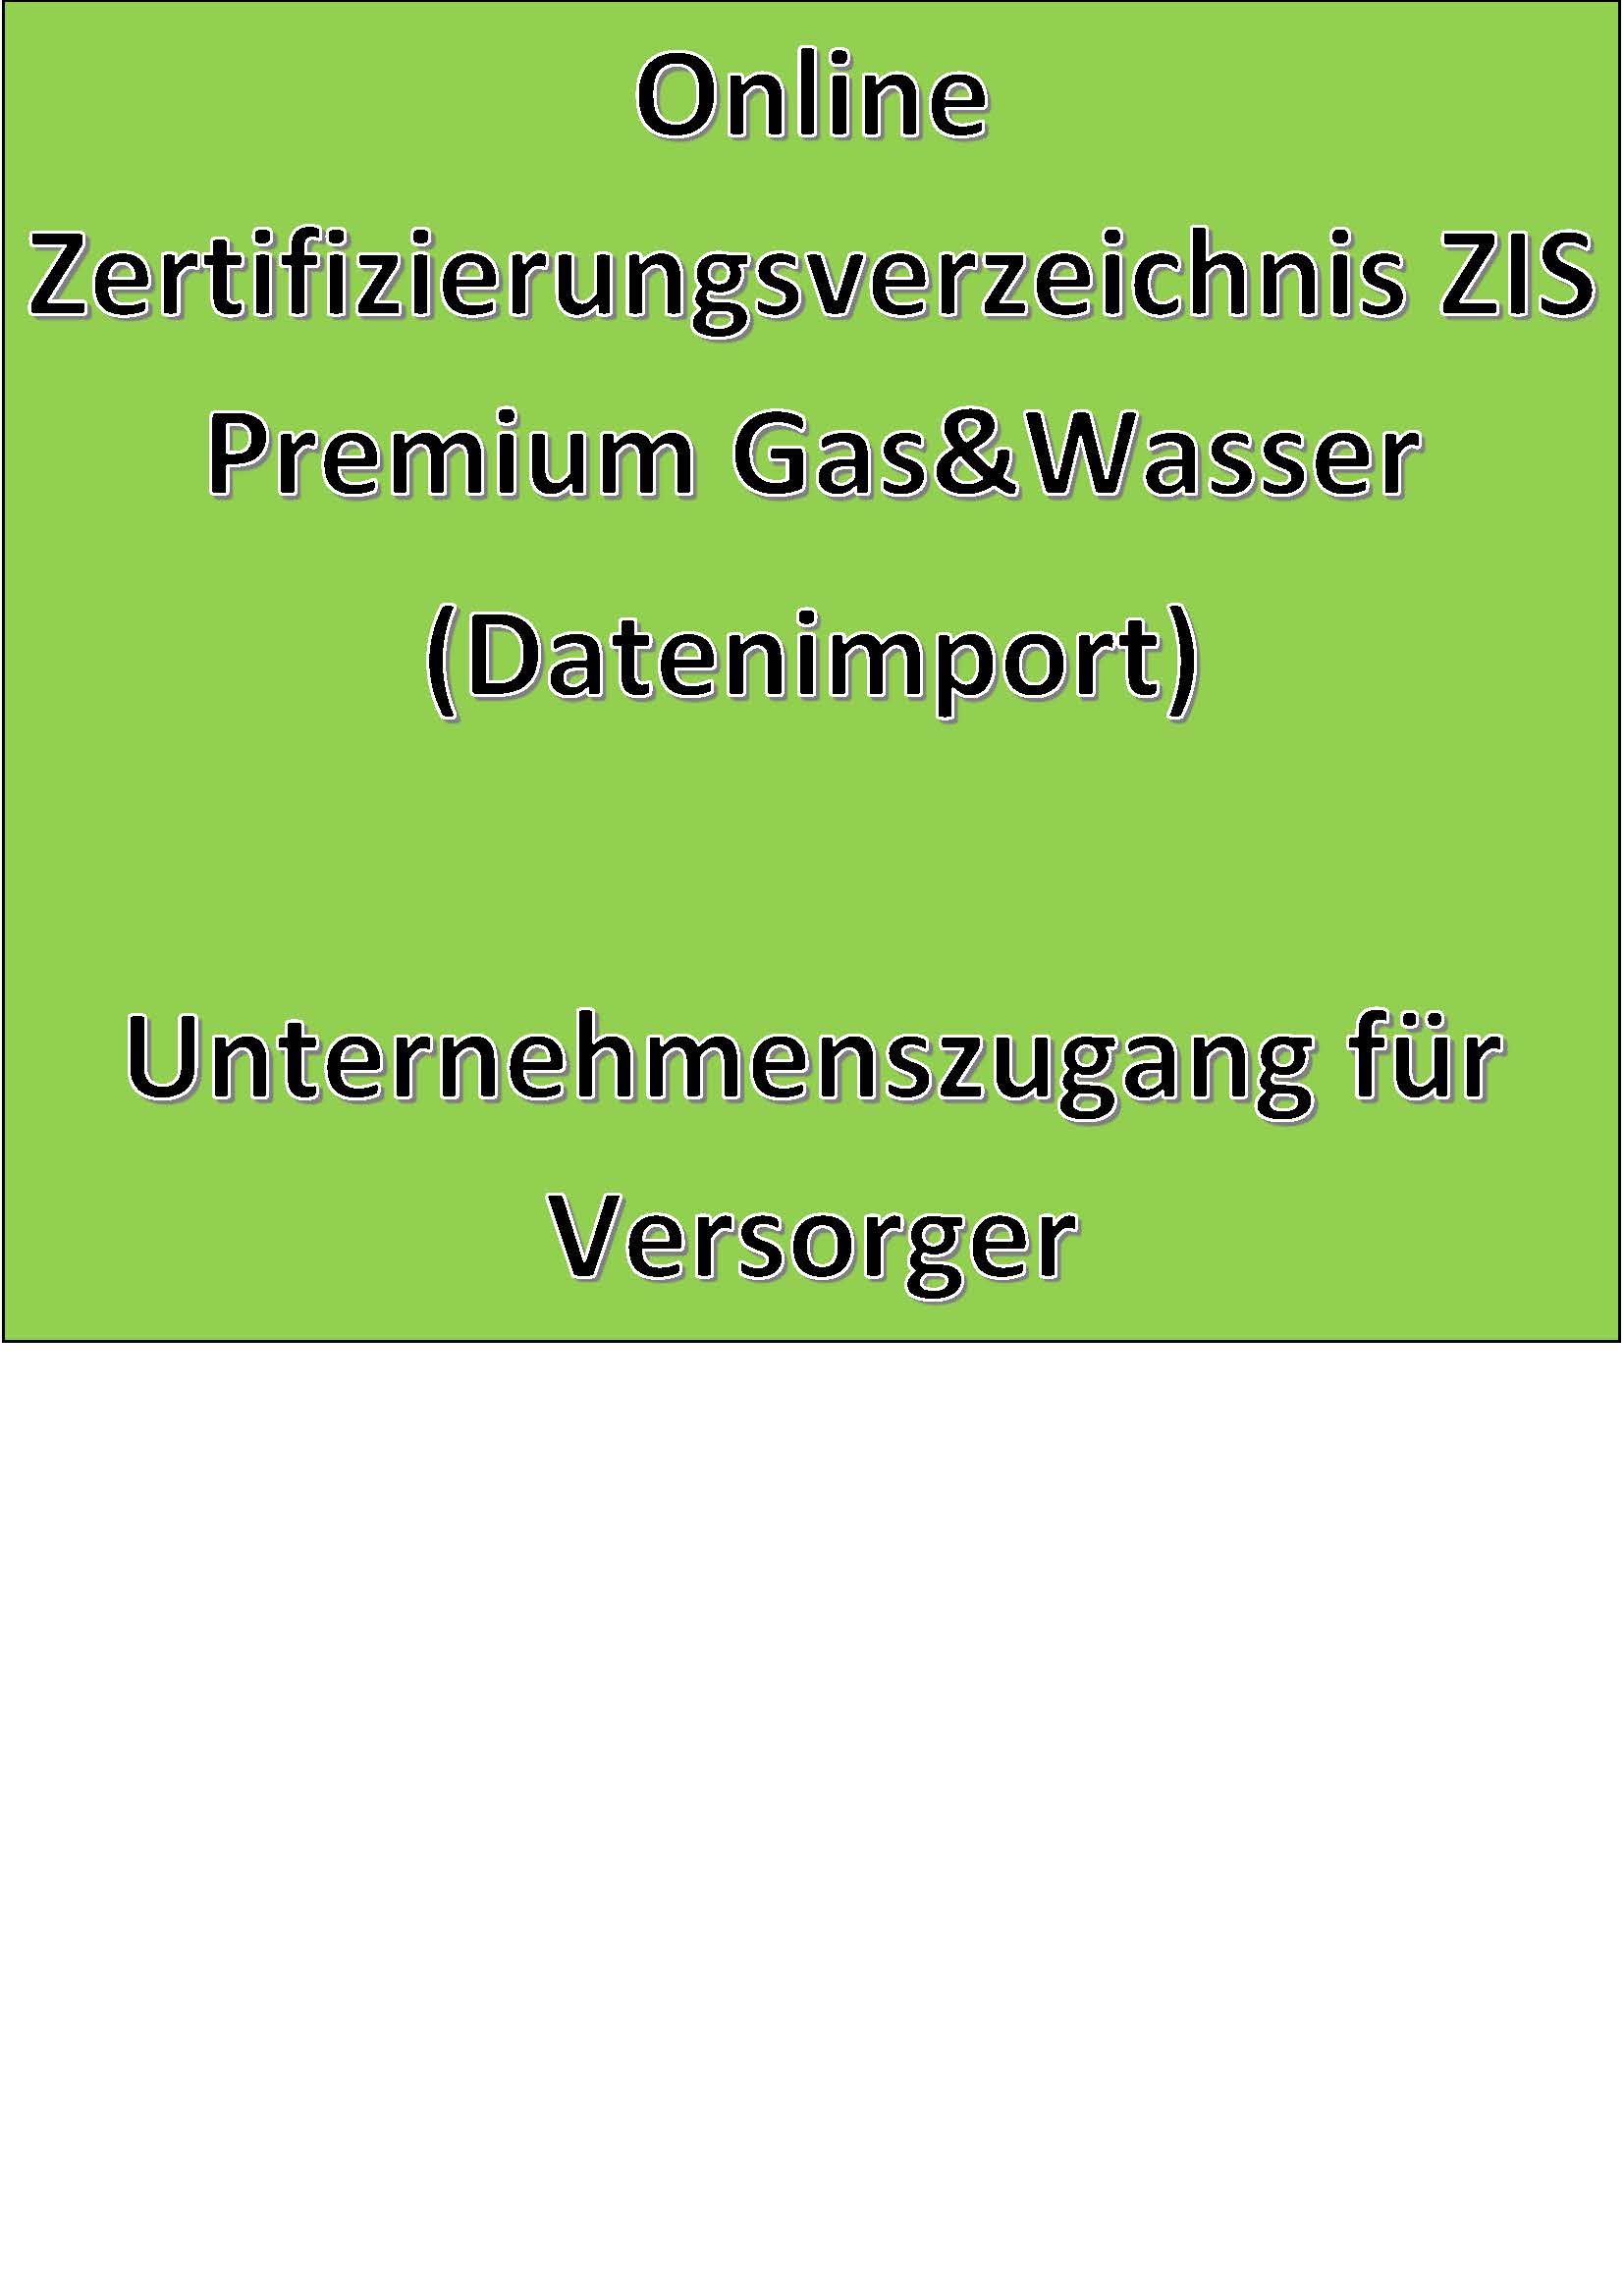 Online Zertifizierungsverzeichnis ZIS Premium Gas&Wasser (Datenimport) Unternehmenszugang für Versorger